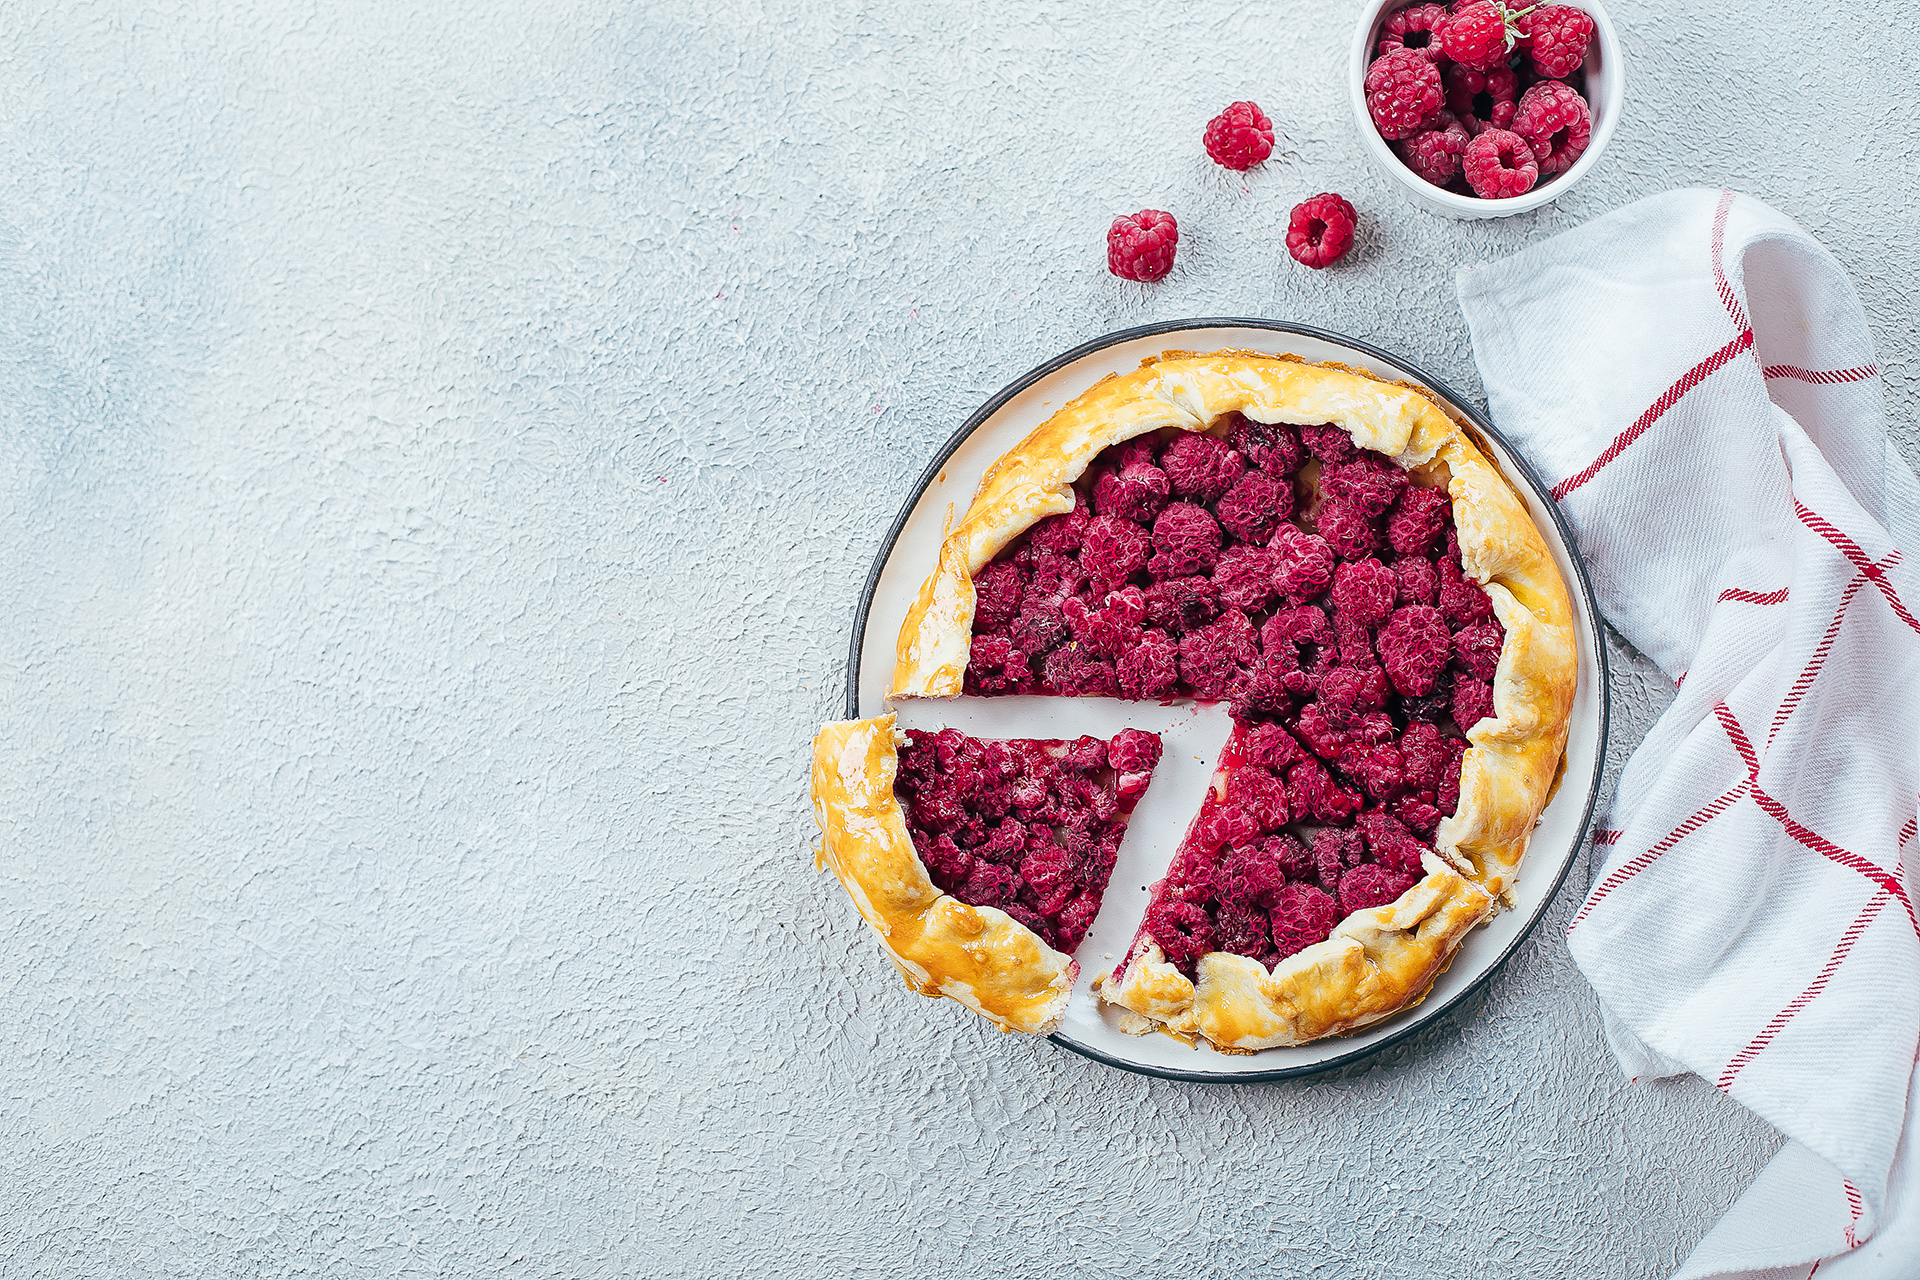 Billedet viser en Raspberry pie eller hindbærtærte som det hedder på dansk.